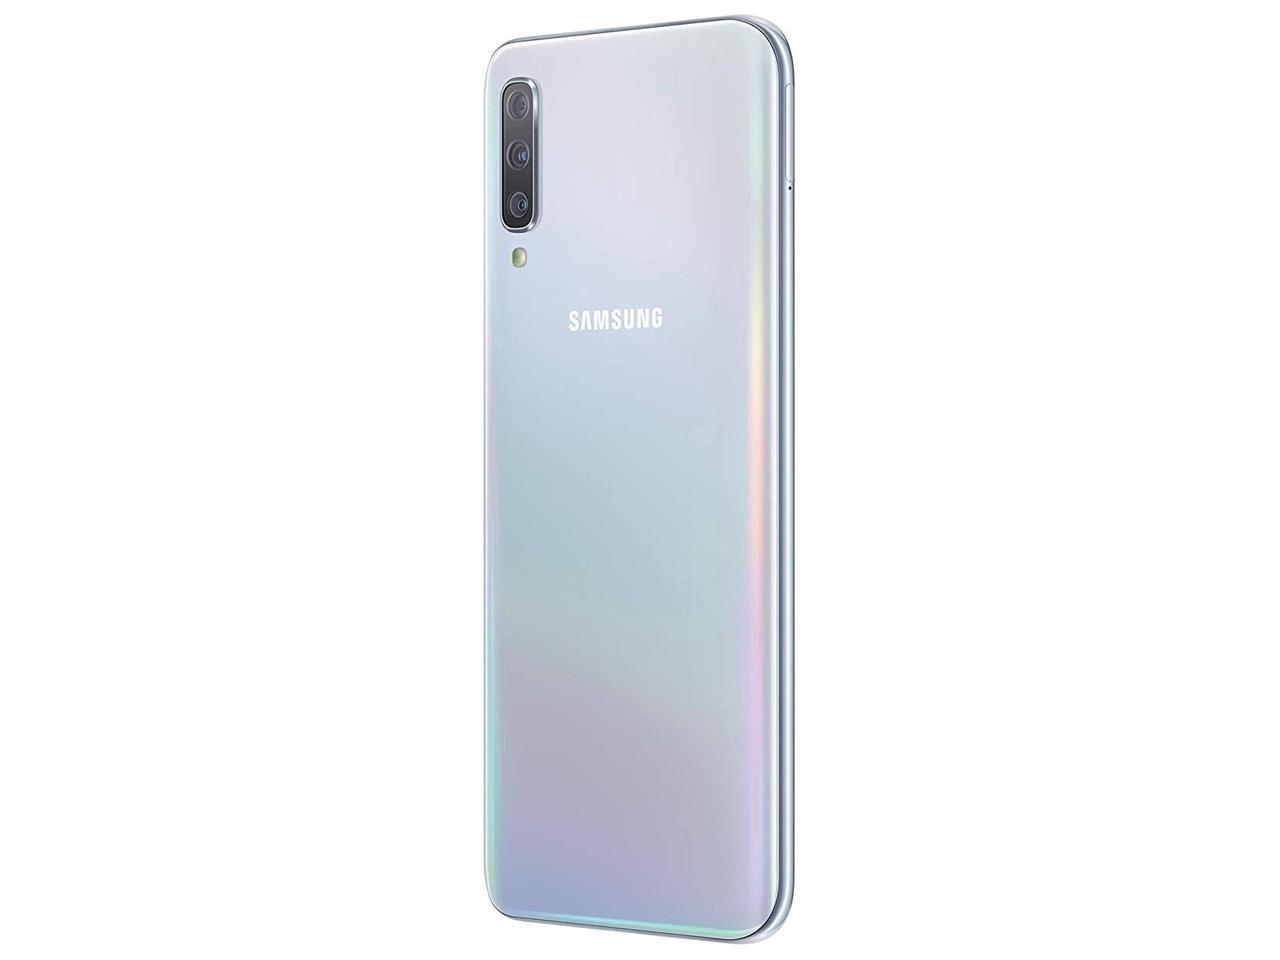 Samsung A51 128gb White